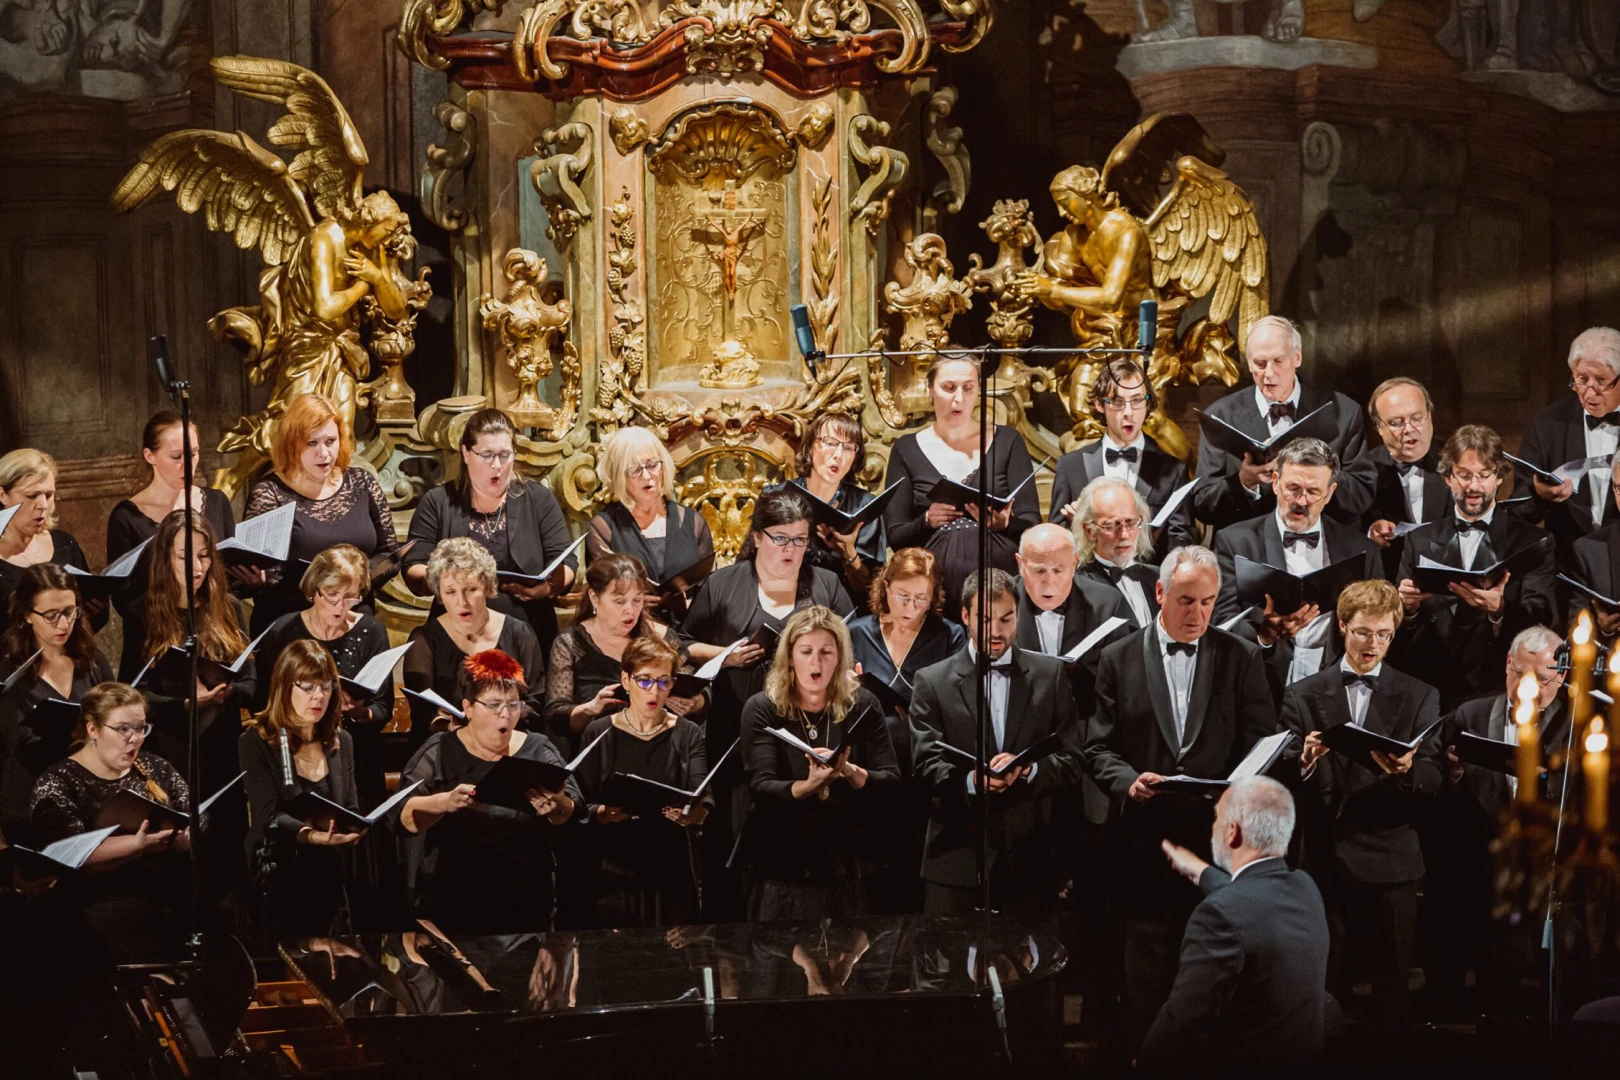 Kühn Choir of Prague